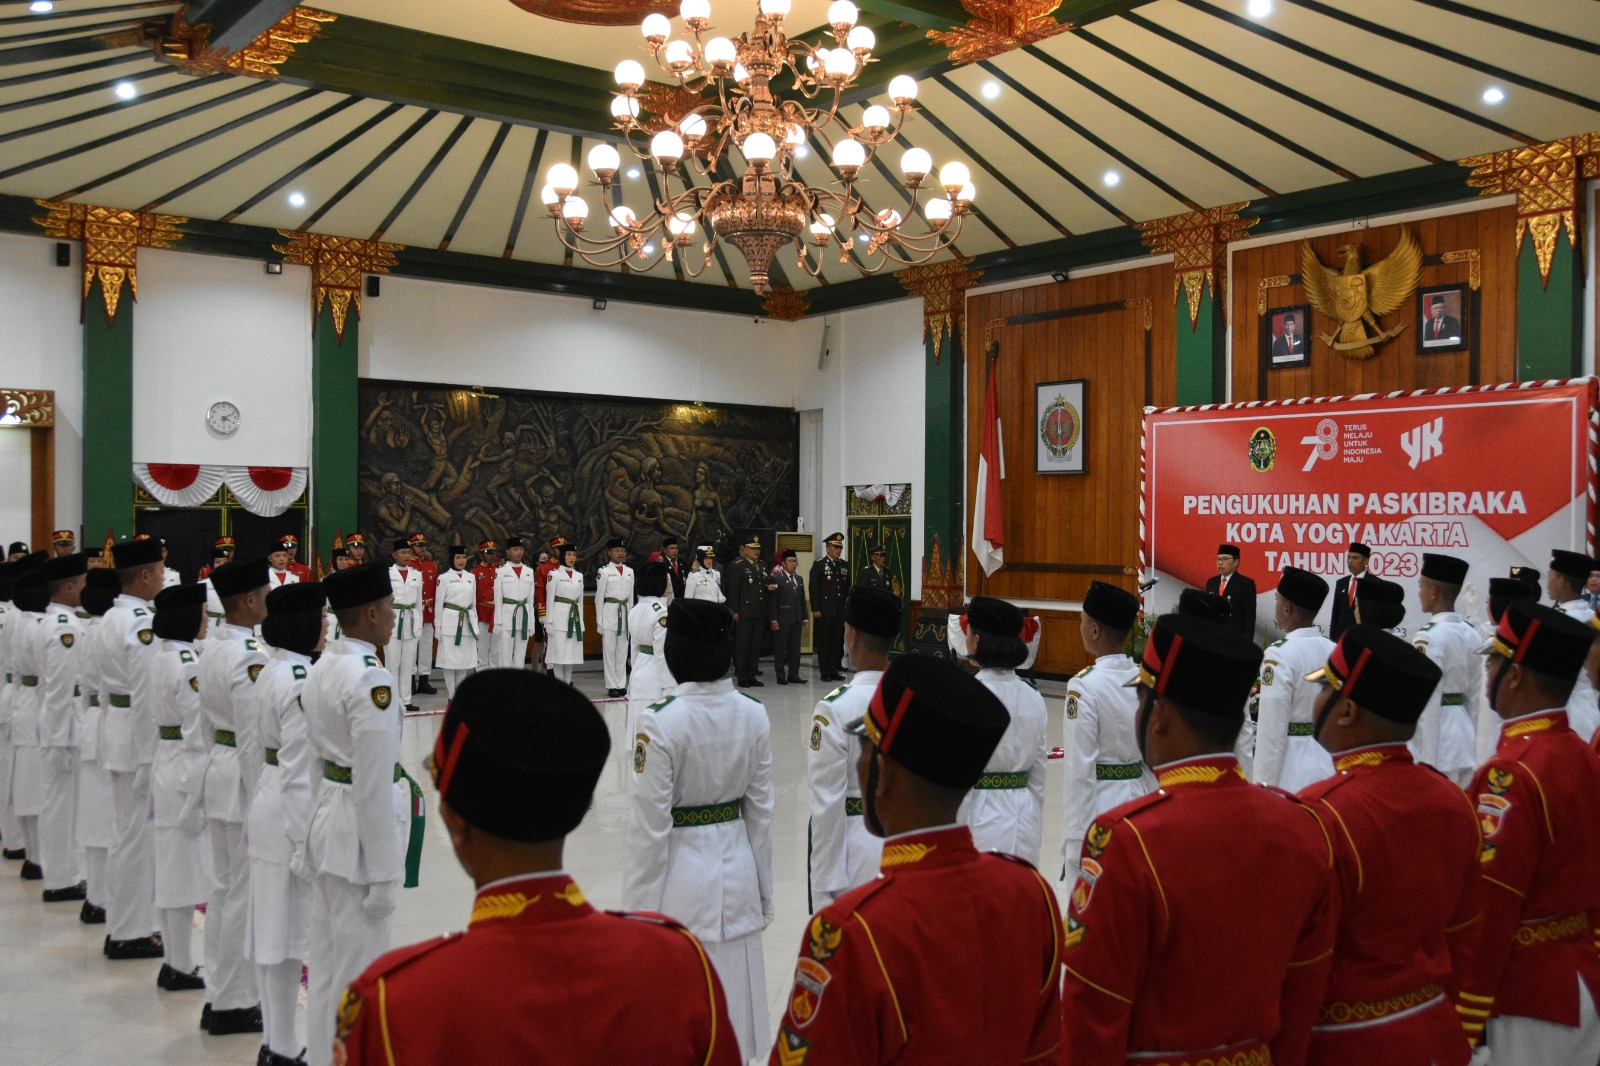 Ketua Pengadilan Negeri Yogyakarta Menghadiri Pengukuhan Paskibraka Kota Yogyakarta